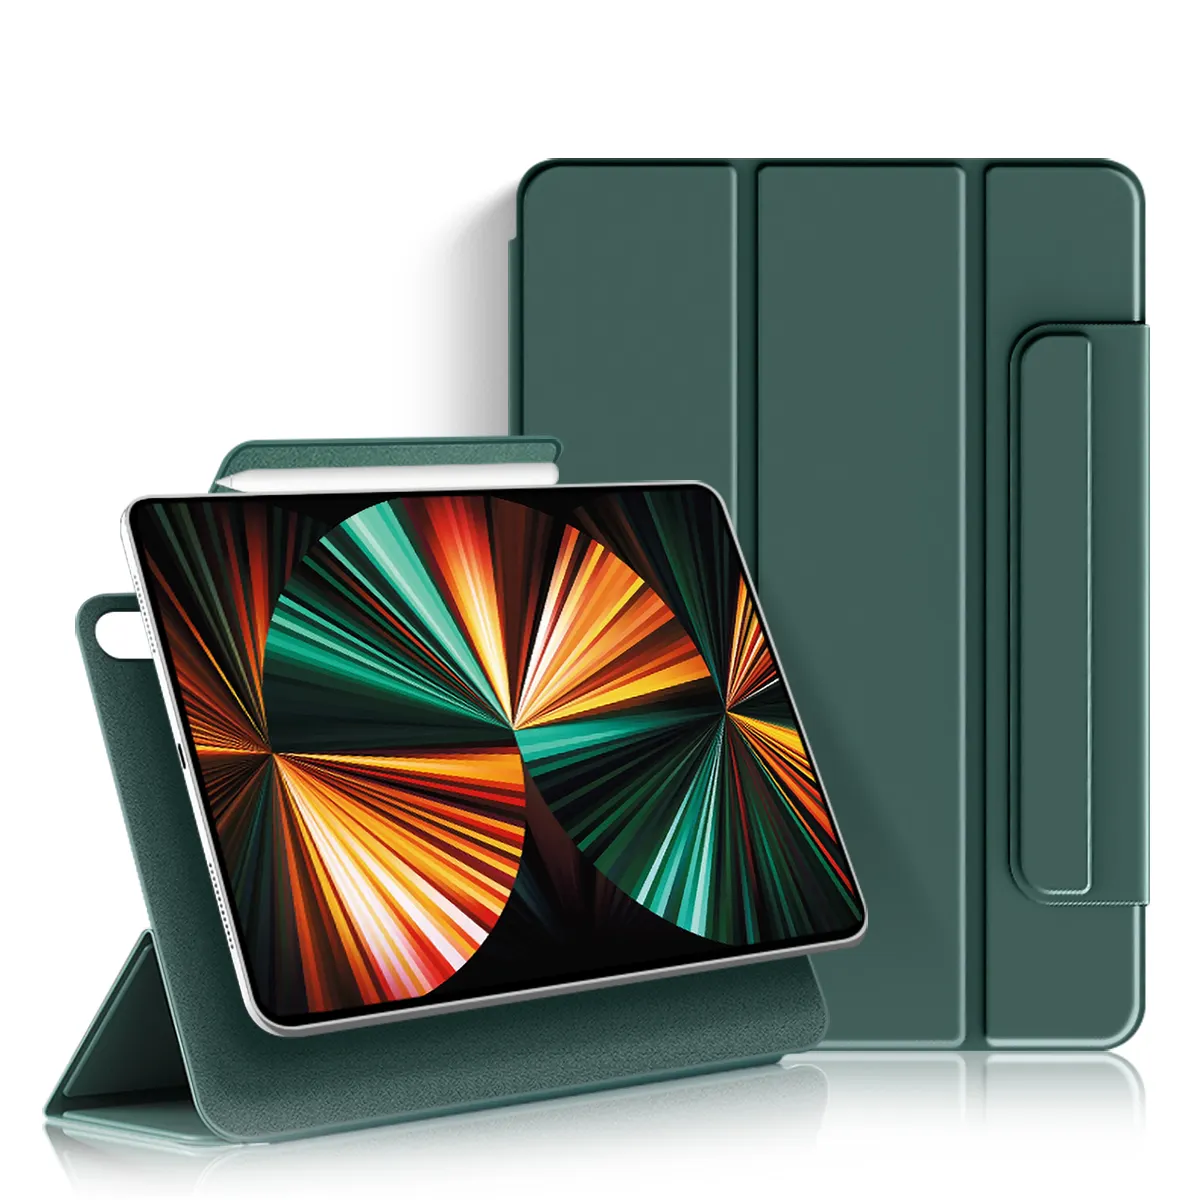 מגנטי סטנד כיסוי עם שרות שינה כיסוי flip case עבור iPad מיני 6th Gen 8.3 אינץ